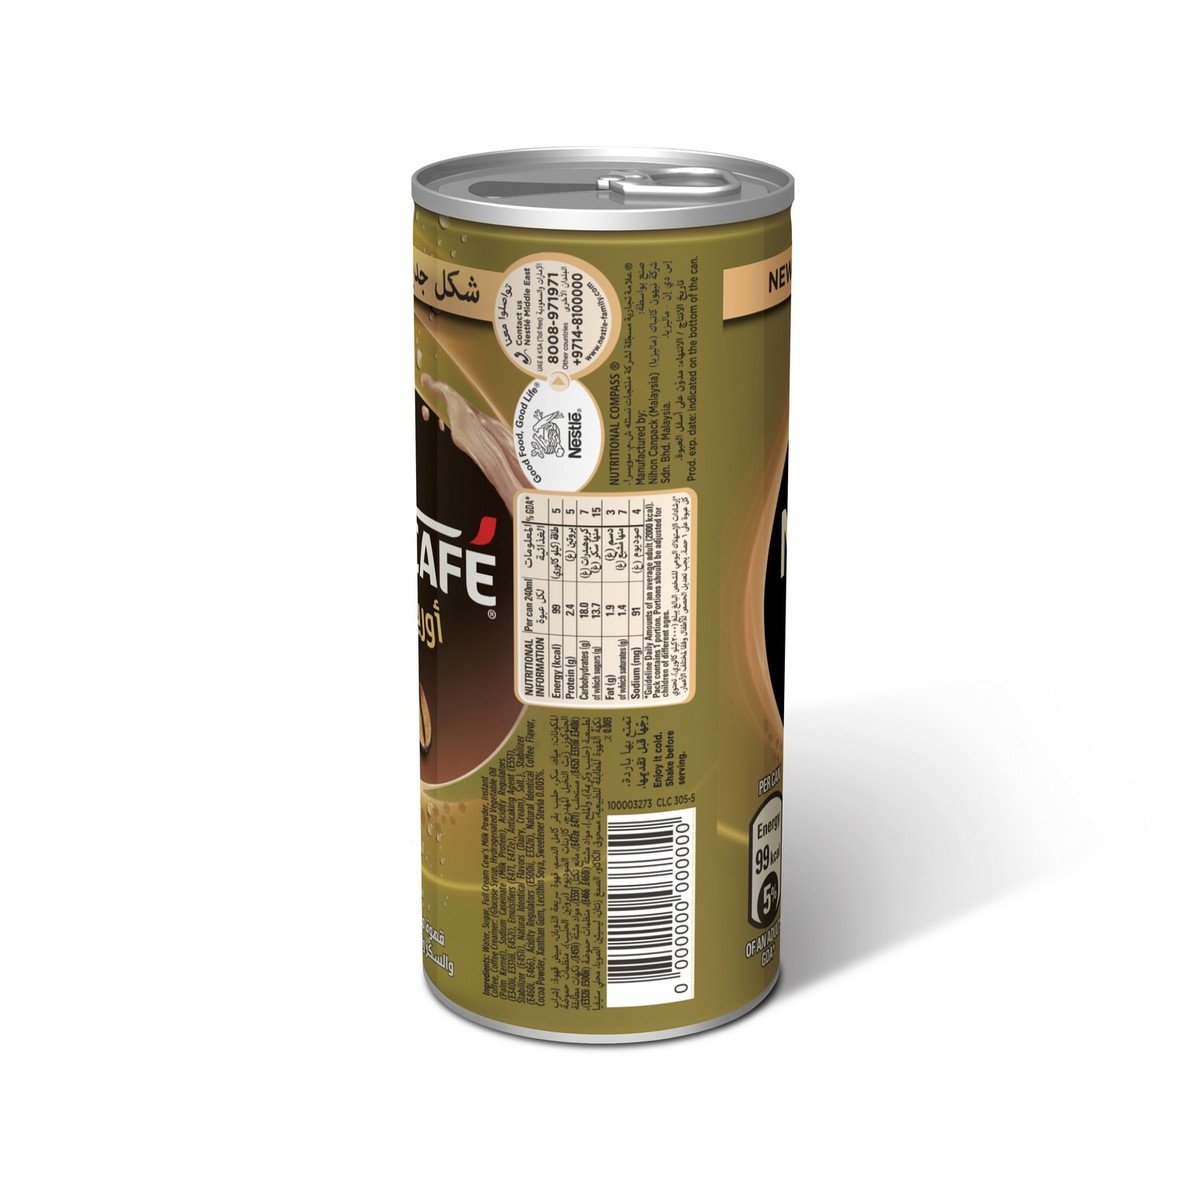 Nescafe Ready to Drink Original Coffee 6 x 240 ml